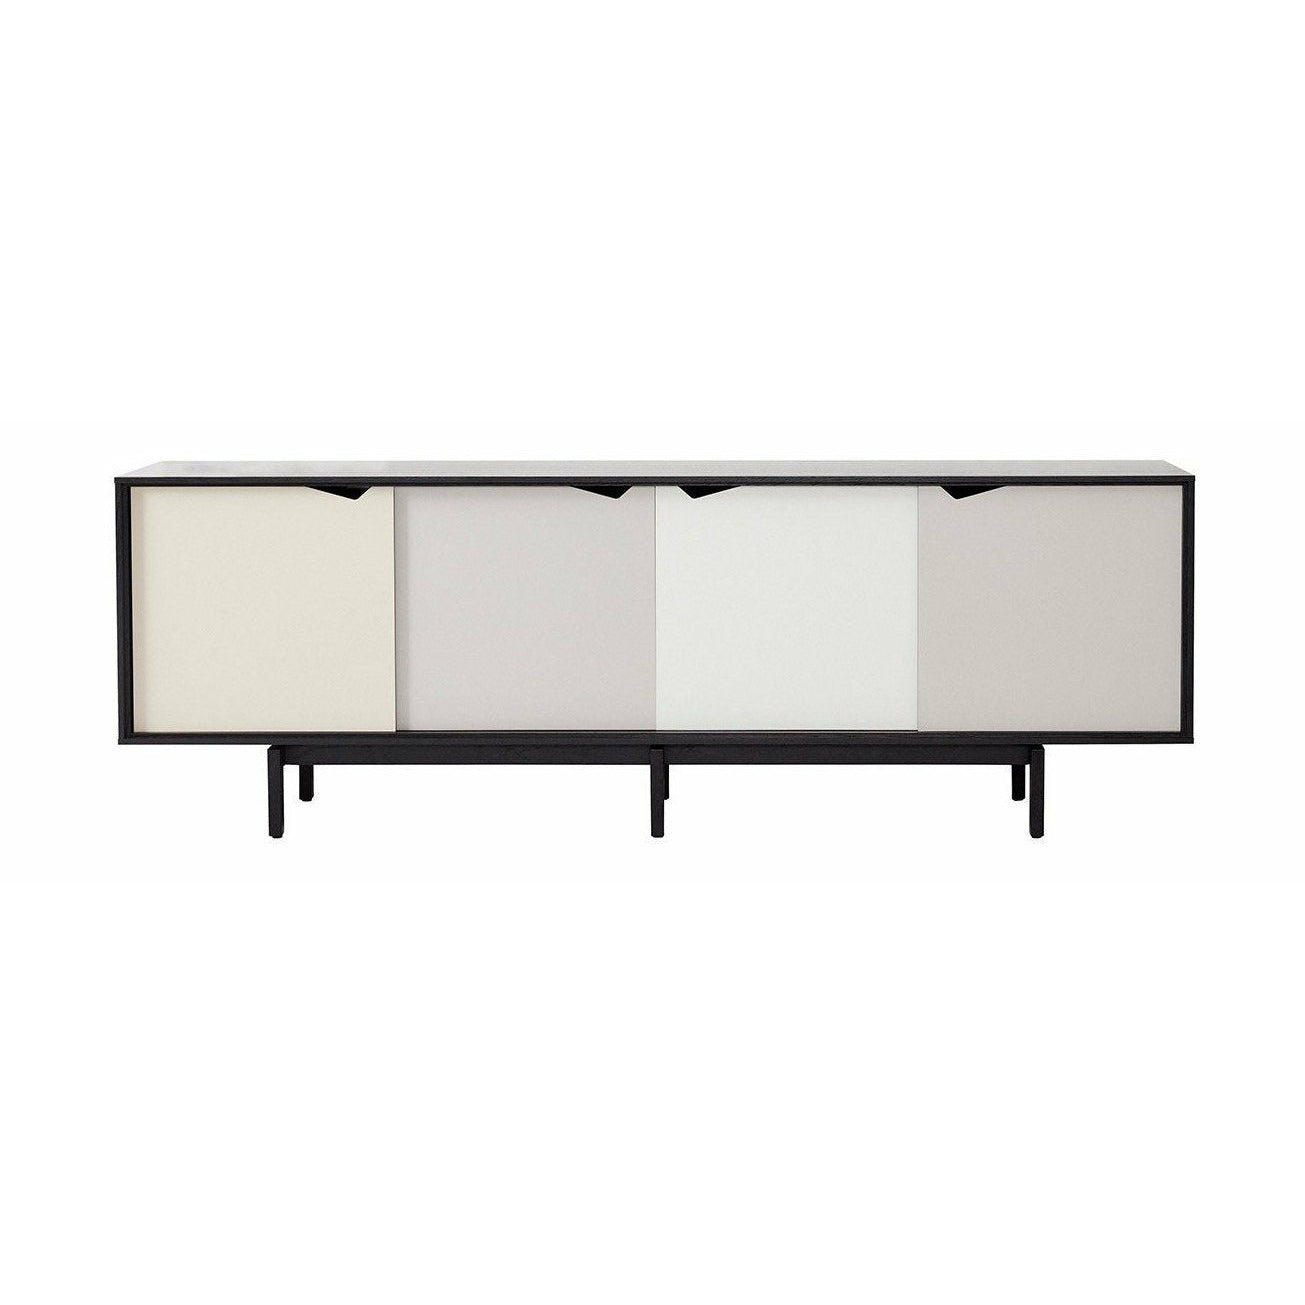 Andersen Furniture S1 på sidobadsvart, mångfärgade lådor, 200 cm